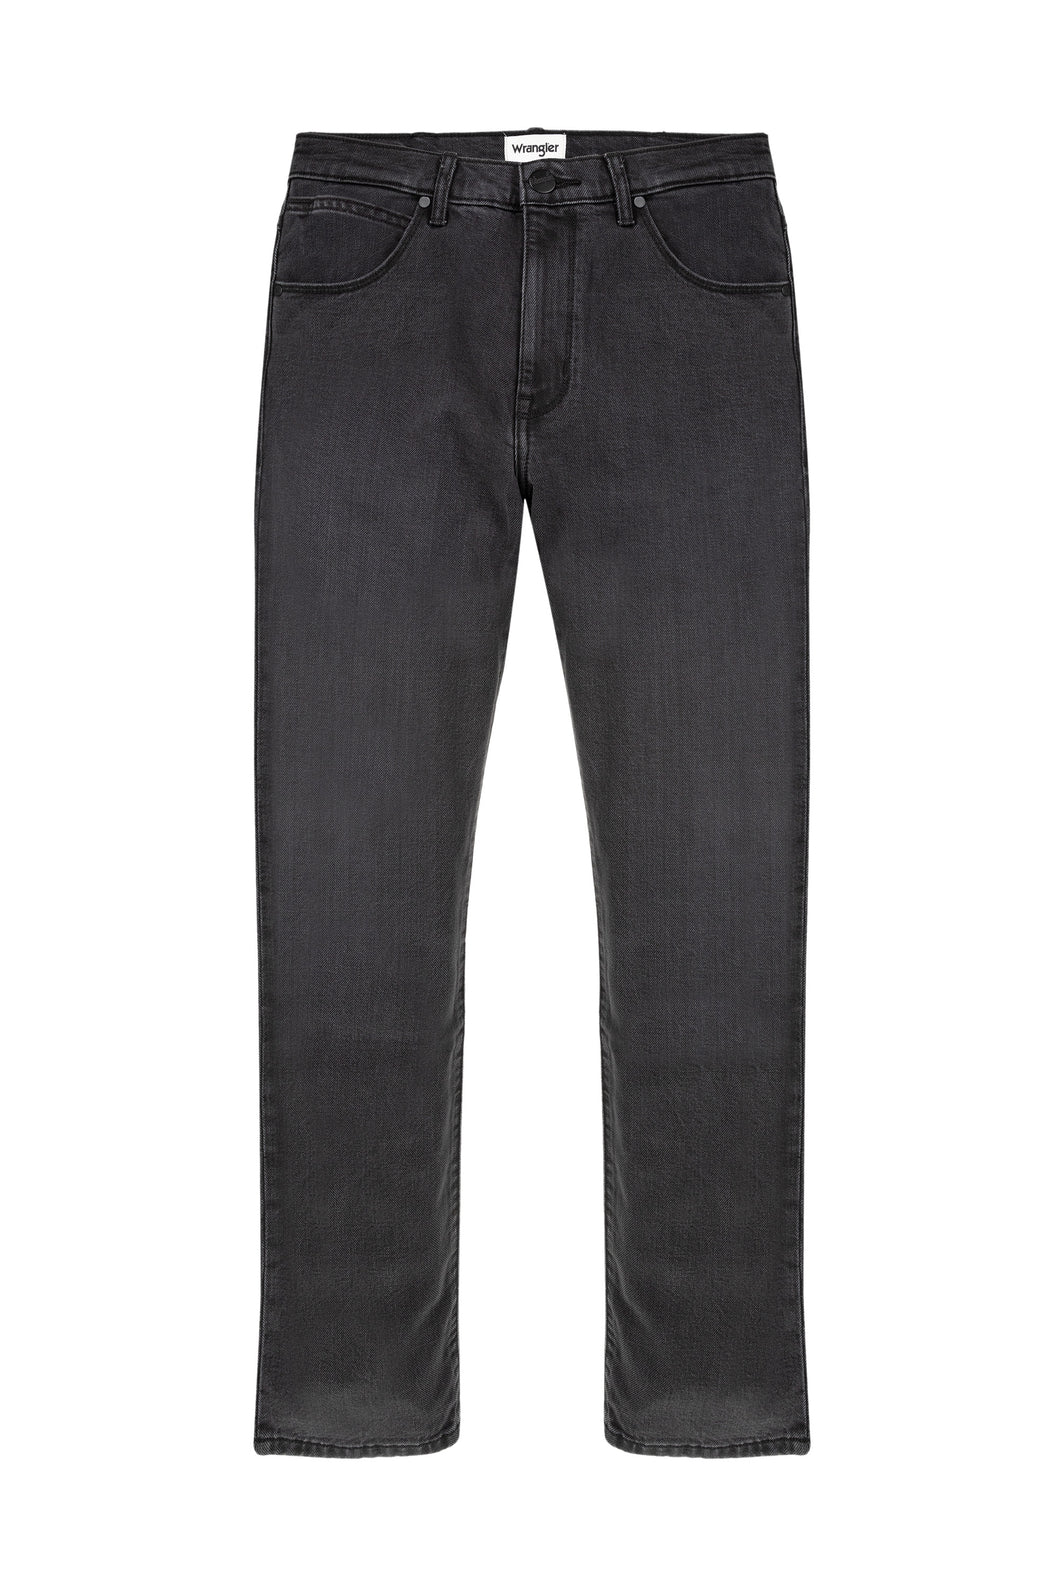 Wrangler Arizona Blackstrap Jeans